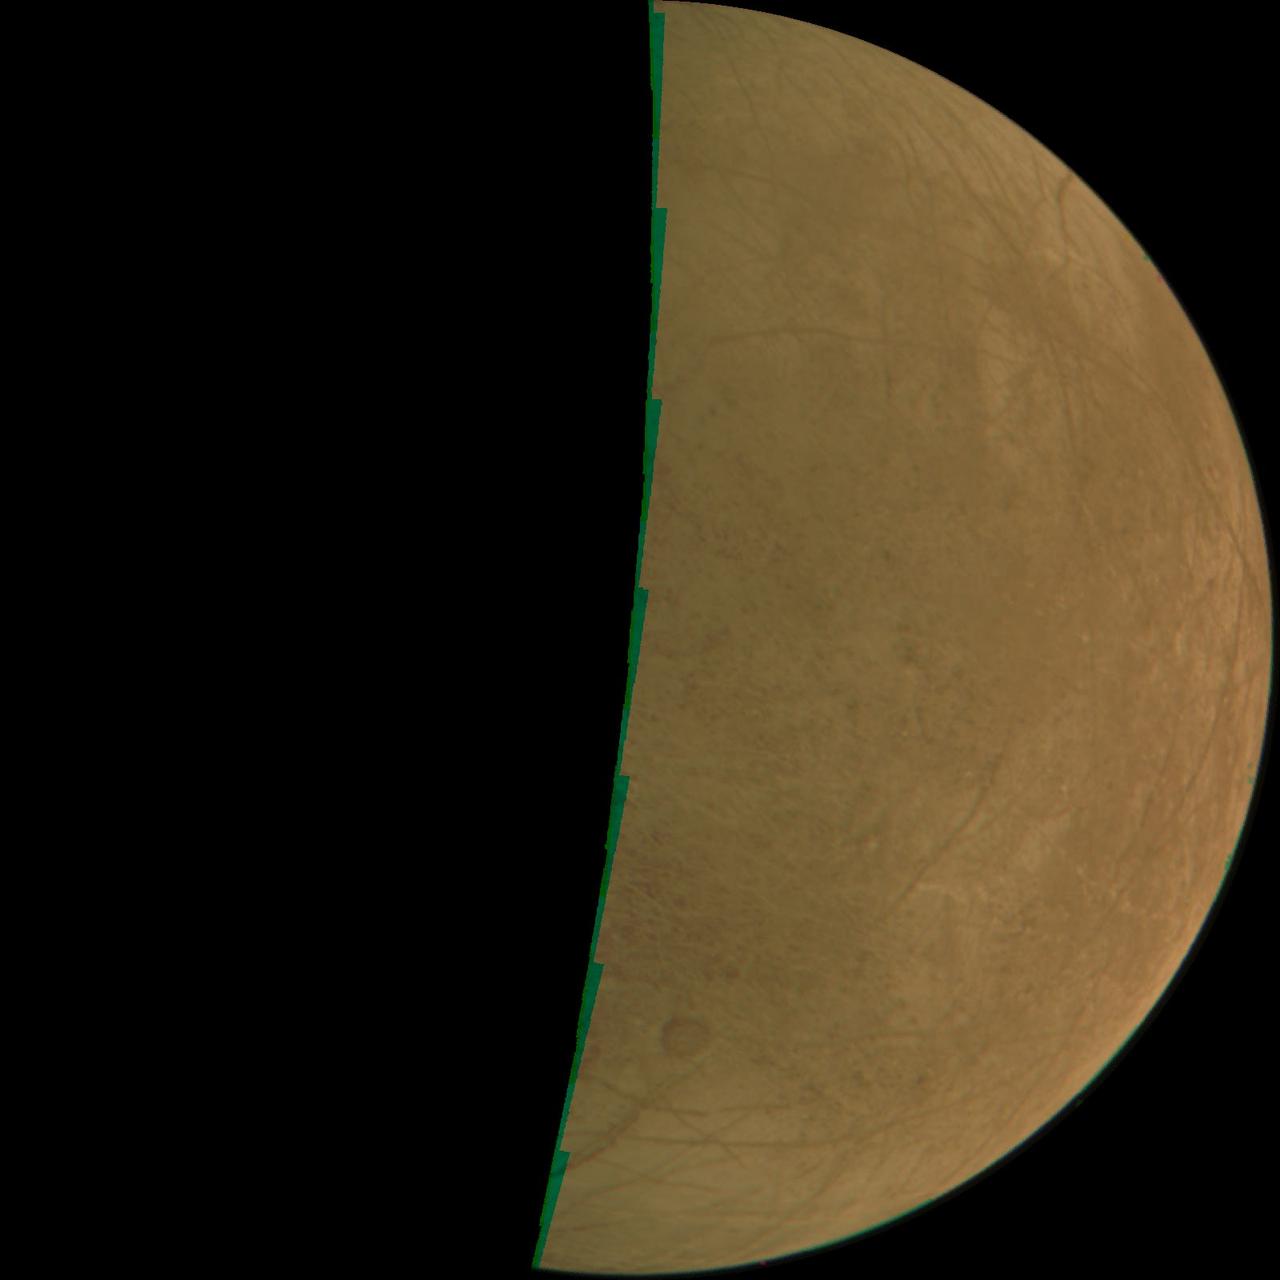 NASAの木星探査機ジュノーが2022年9月29日に撮影したエウロパの未加工の画像データ。